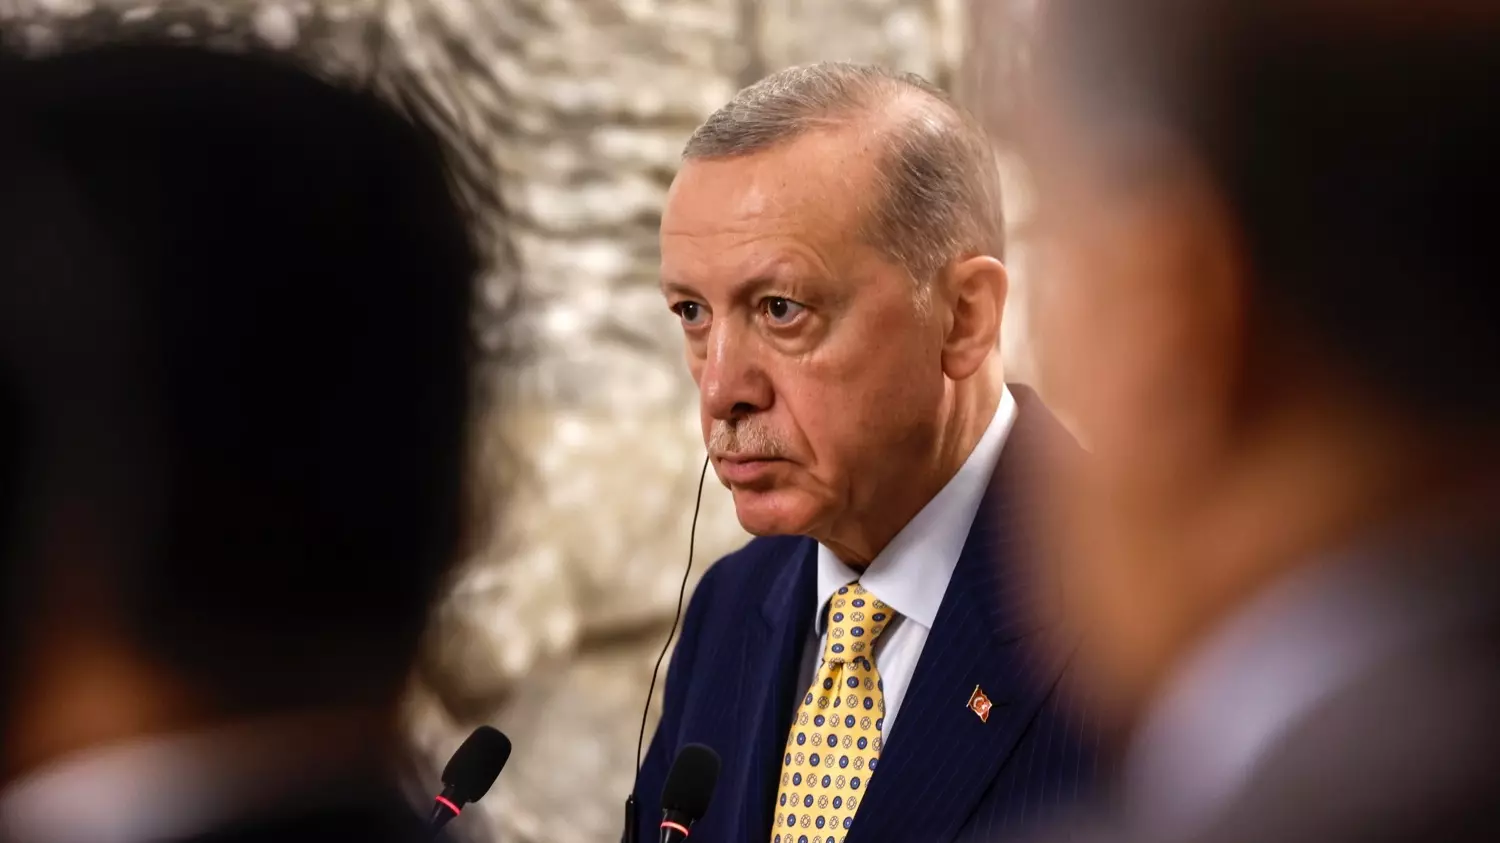 Президент Турции Реджеп Тайип Эрдоган умеет договариваться со всеми так, чтобы извлечь пользу для Турции